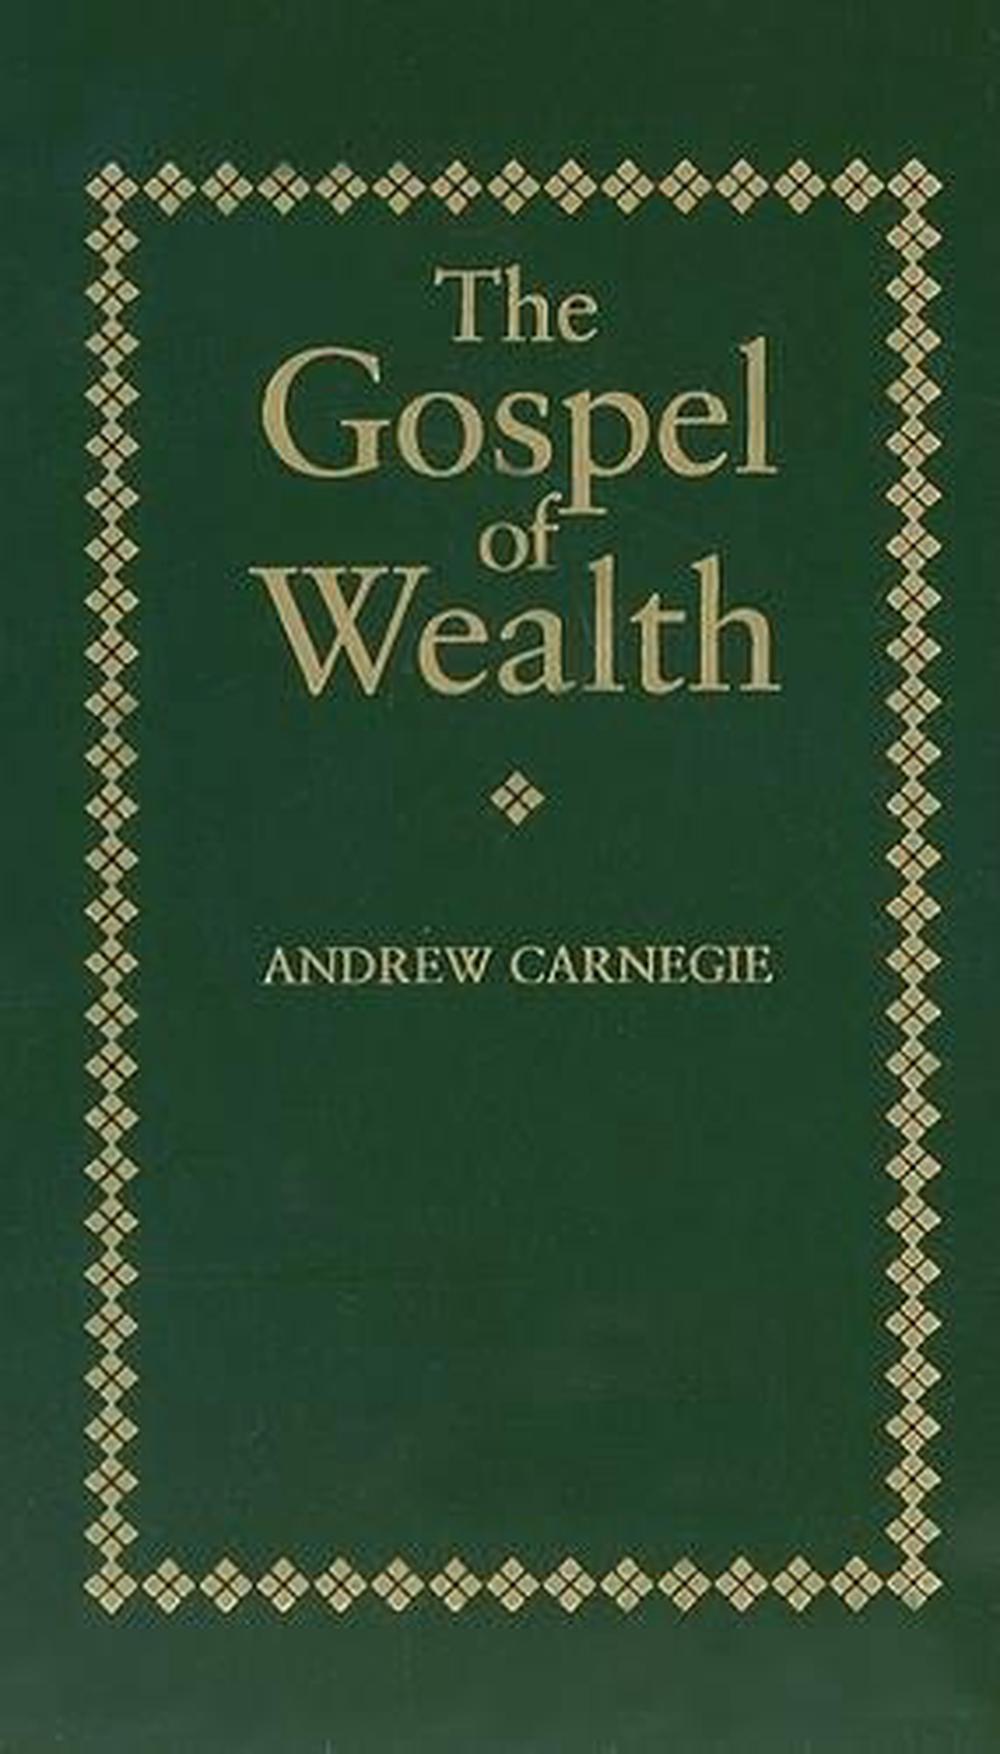 andrew carnegie gospel of wealth essay